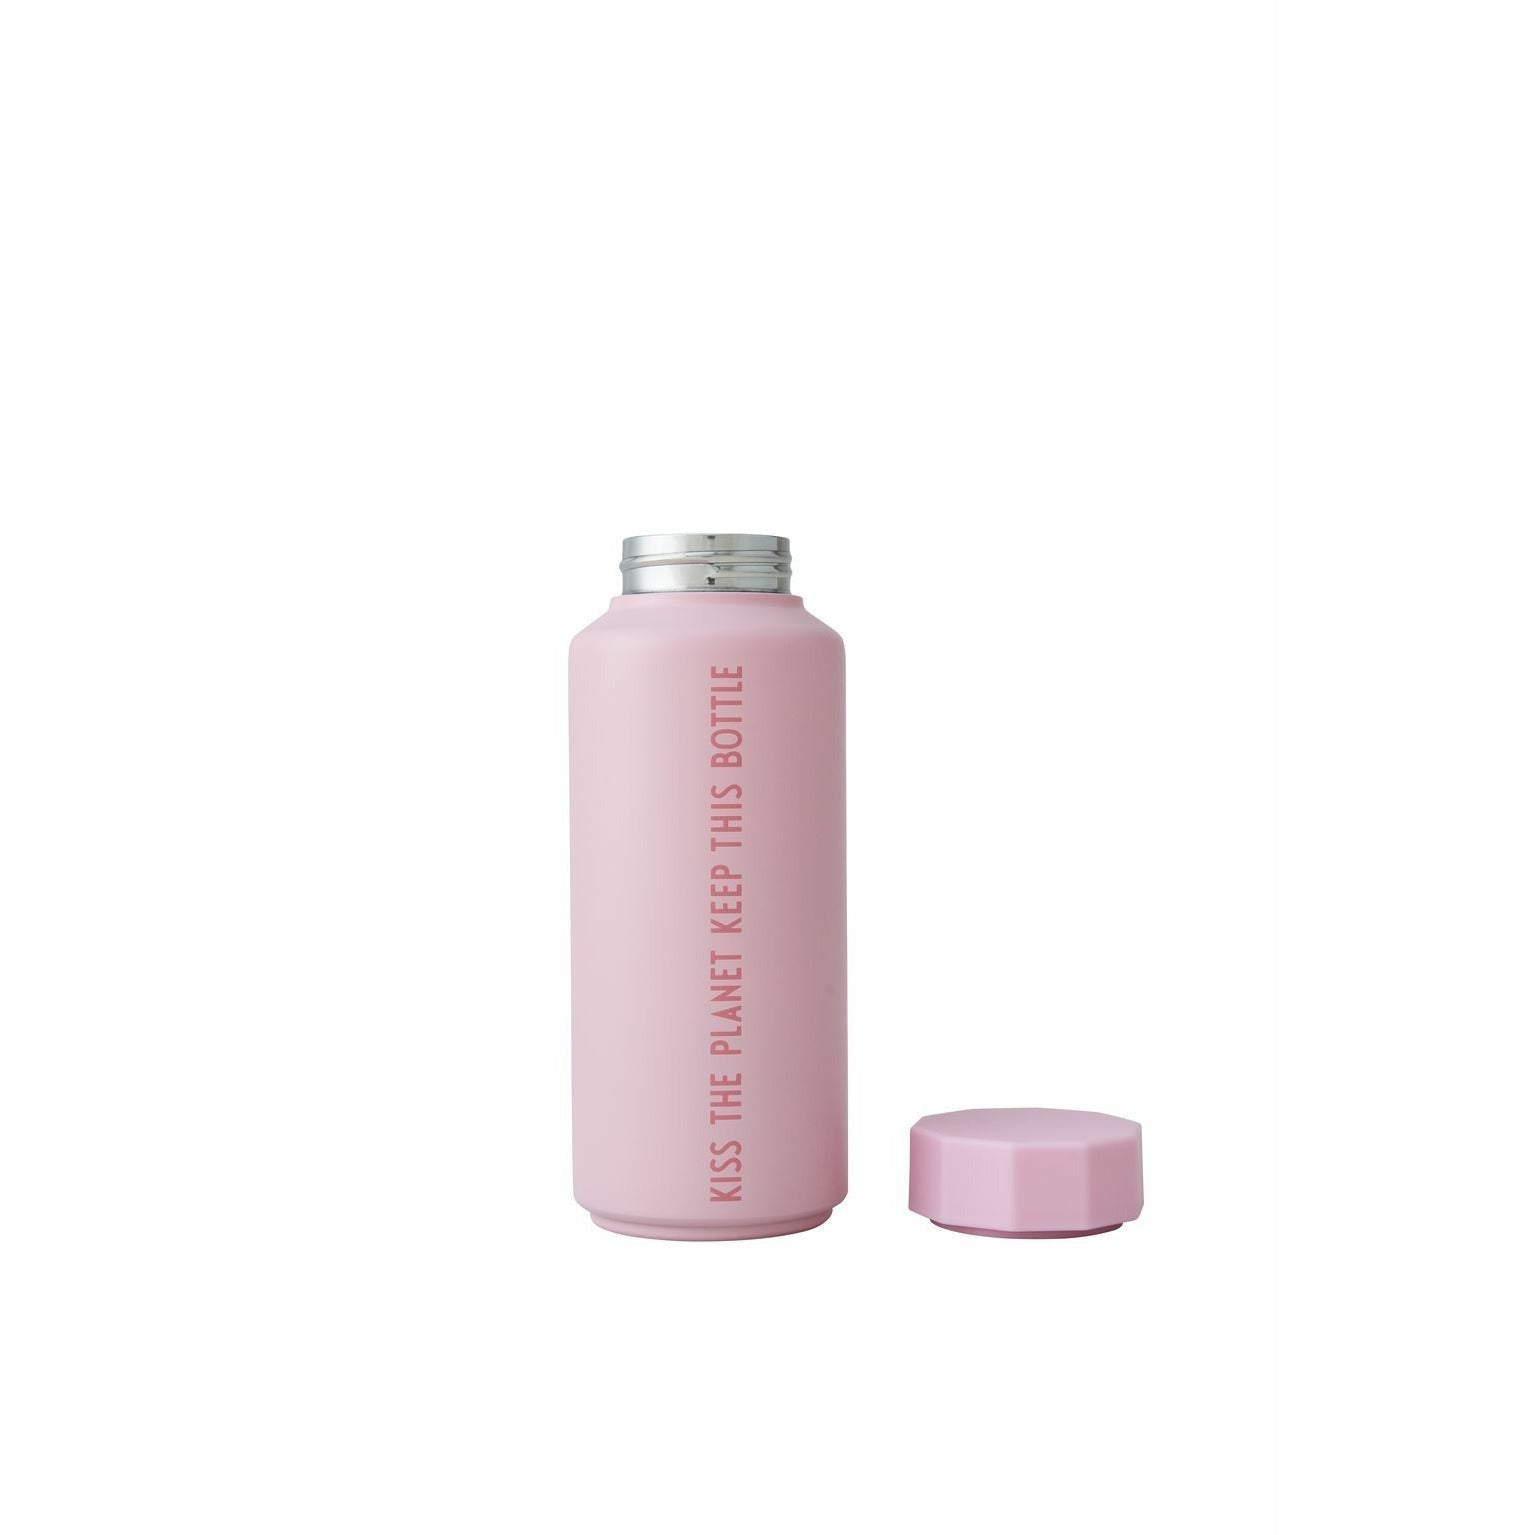 Designbuchstaben Thermos Flask Special Edition Pink, Kuss